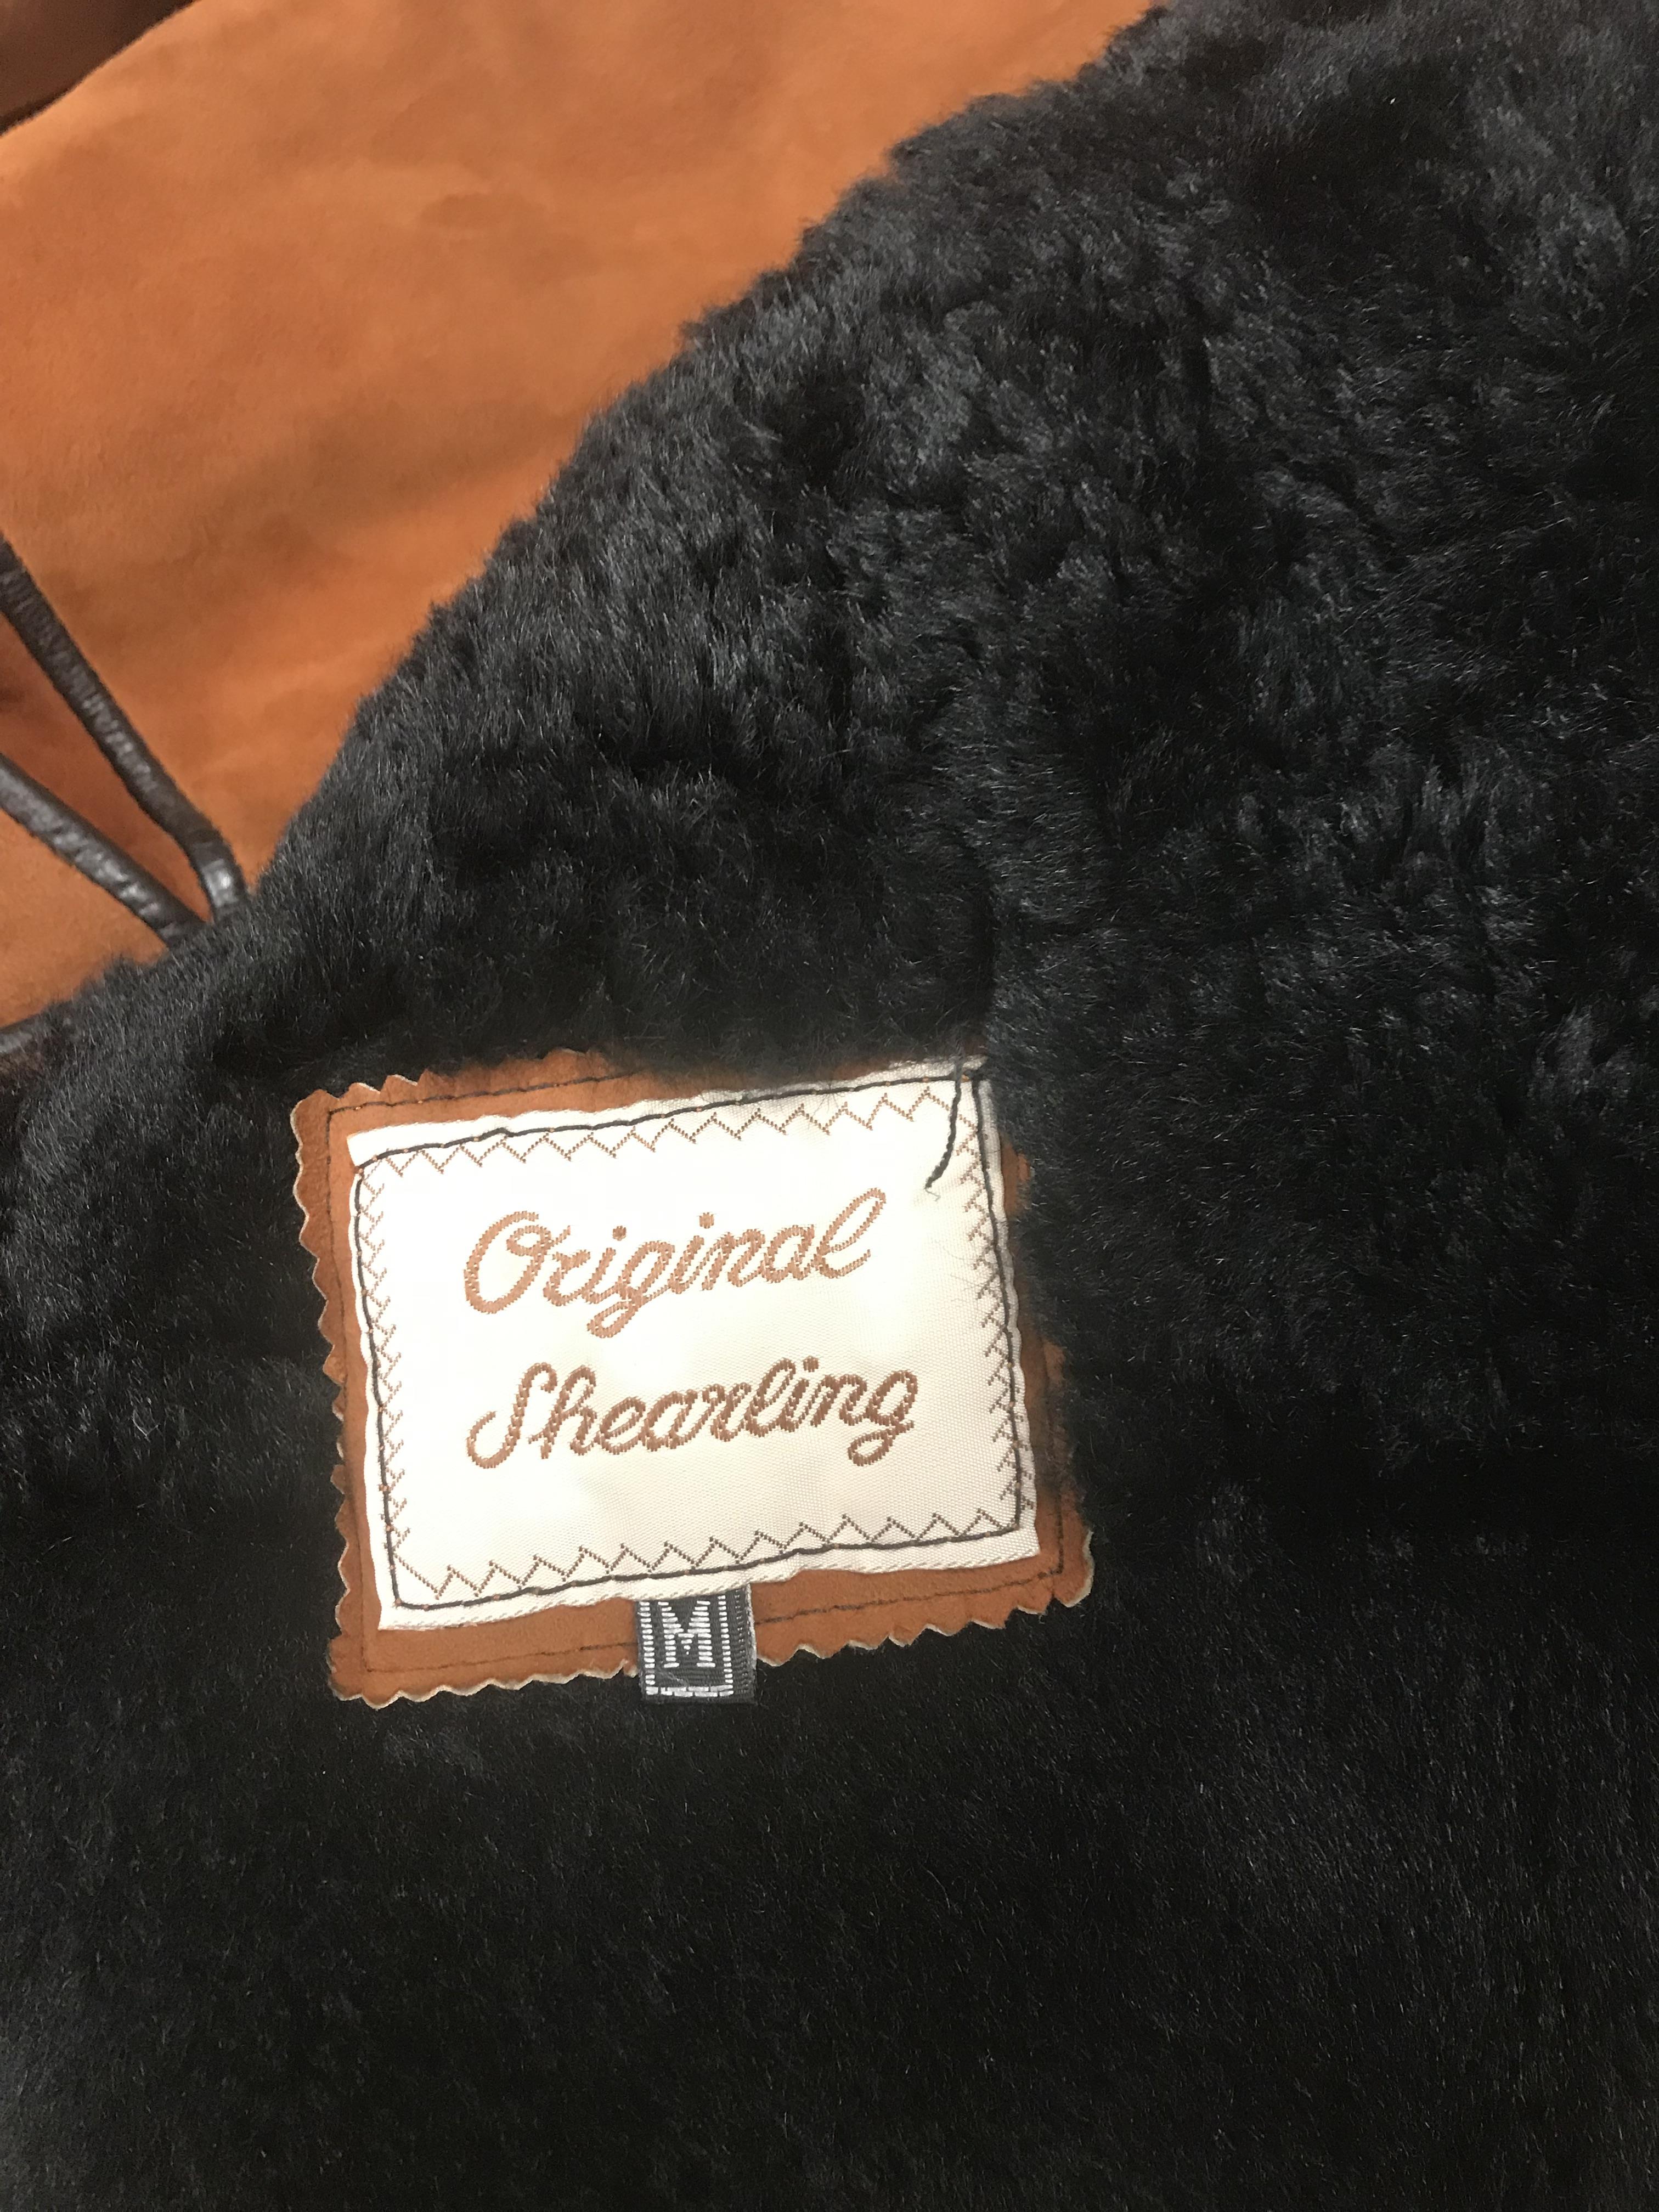 An original shearling coat in brown, - Image 2 of 2